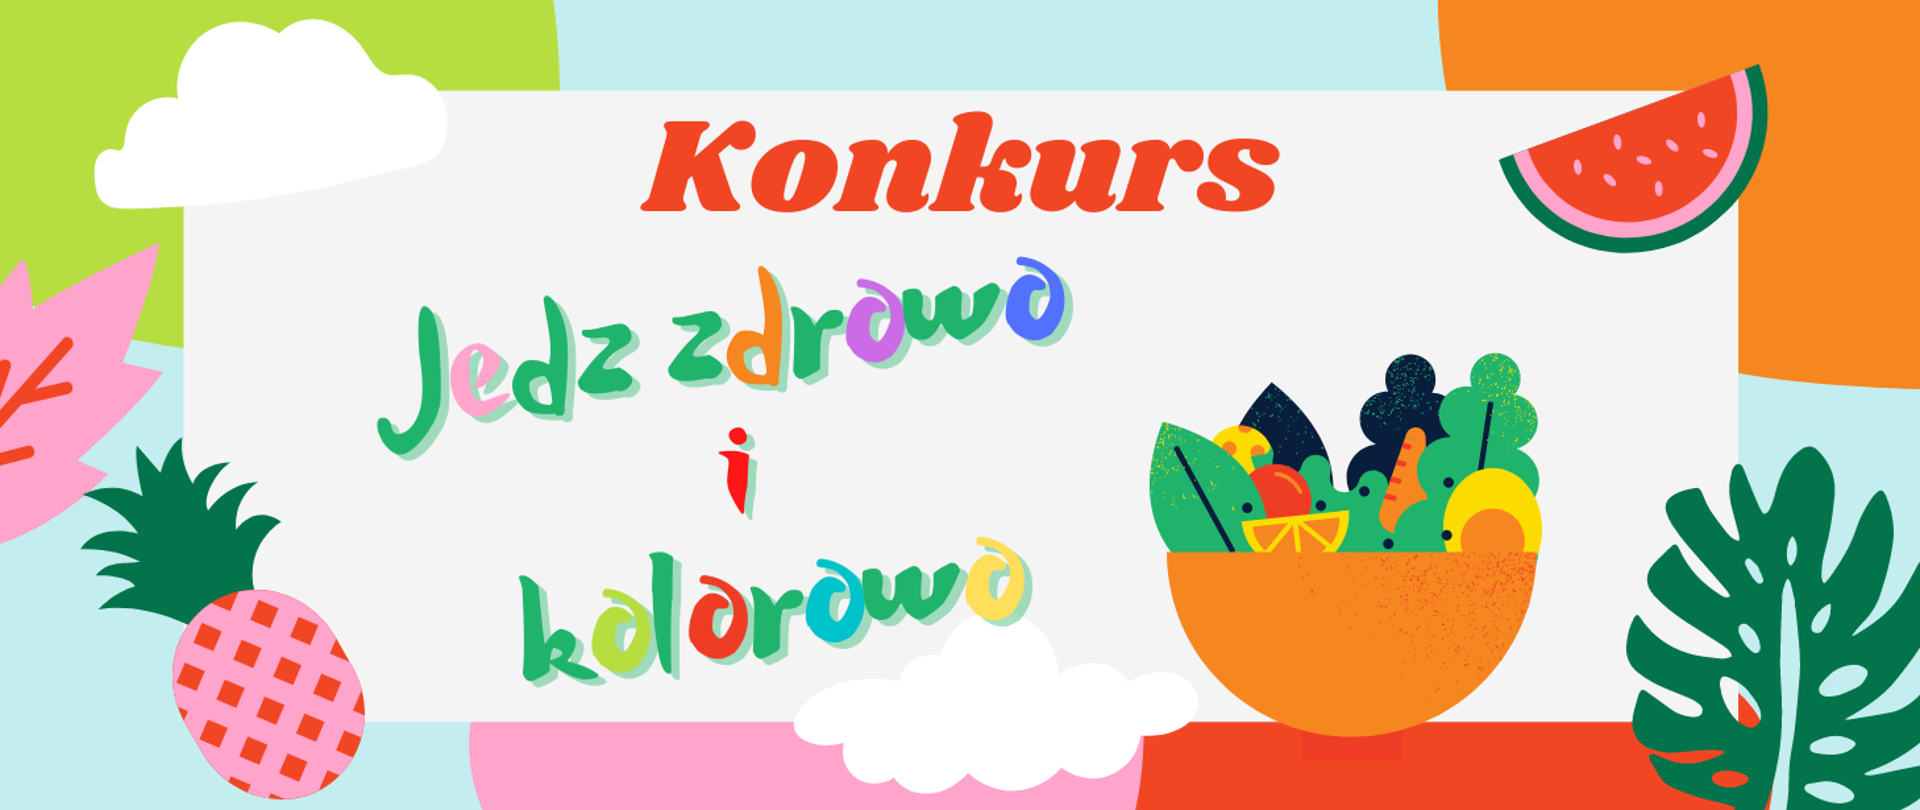 Grafika przedstawia kolorowe hasło konkursu: jedz zdrowo i kolorowo w otoczeniu ilustracji warzyw i owoców